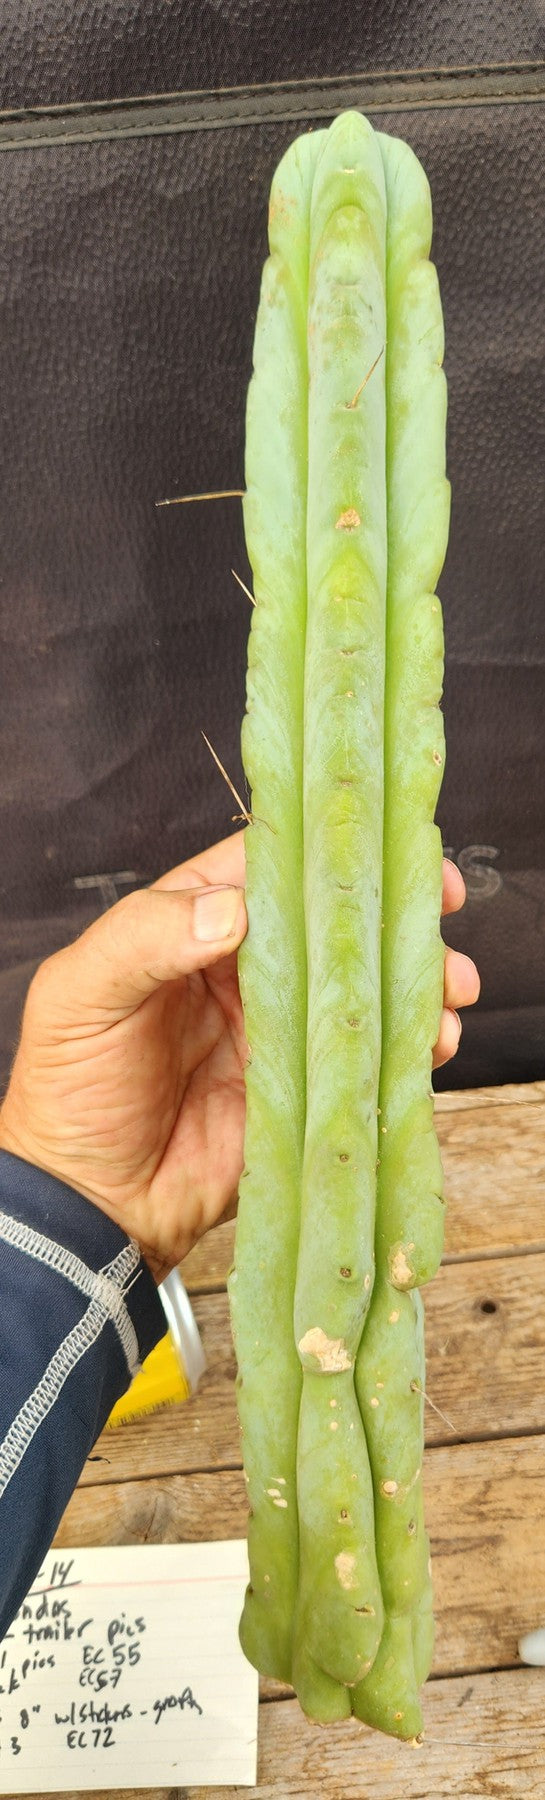 #EC209 EXACT Trichocereus Bridgesii Jiimz Drip Cactus Cutting 15"